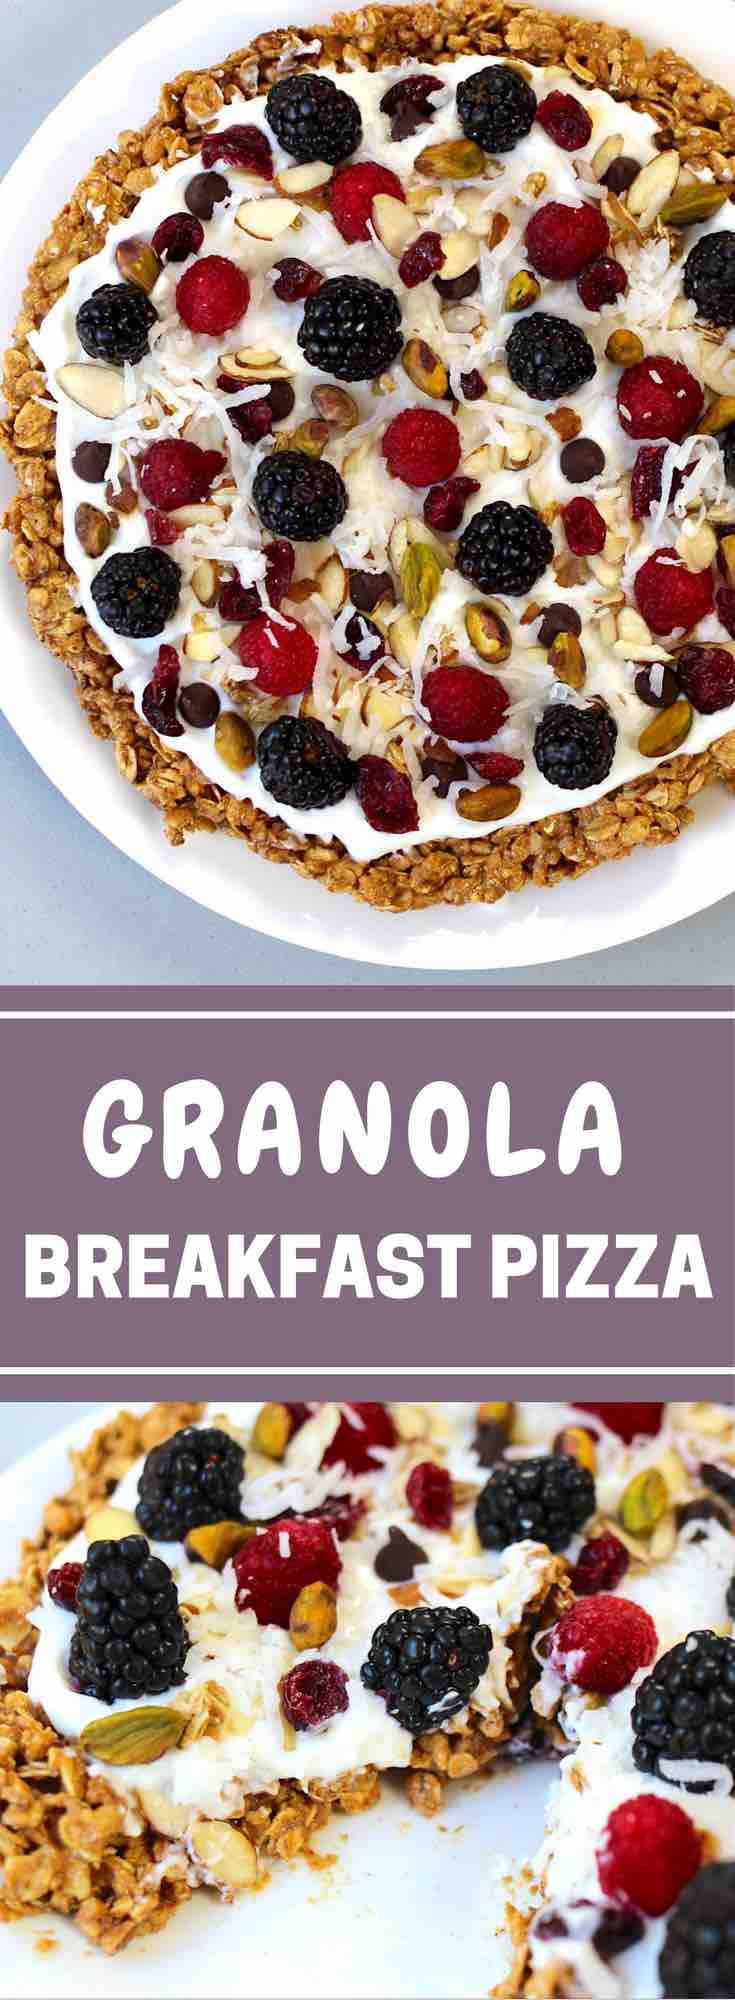 Healthy Breakfast Pizza Recipe
 15 best ideas about Healthy Breakfasts on Pinterest